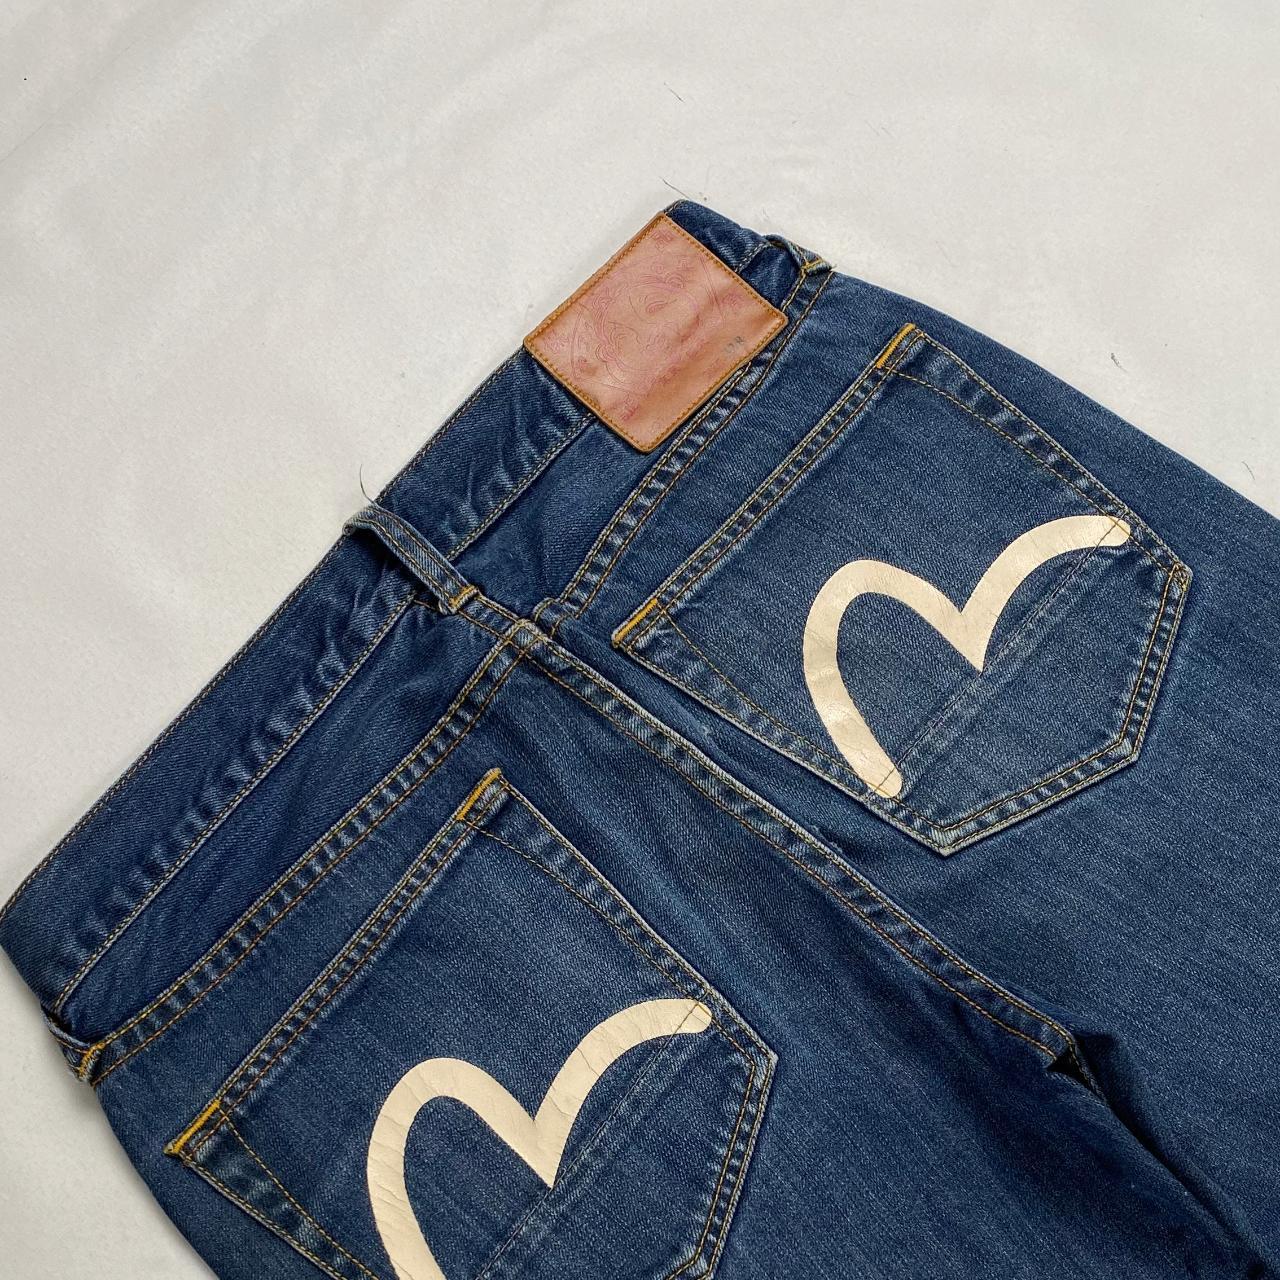 Authentic Vintage Evisu Jeans  (30")